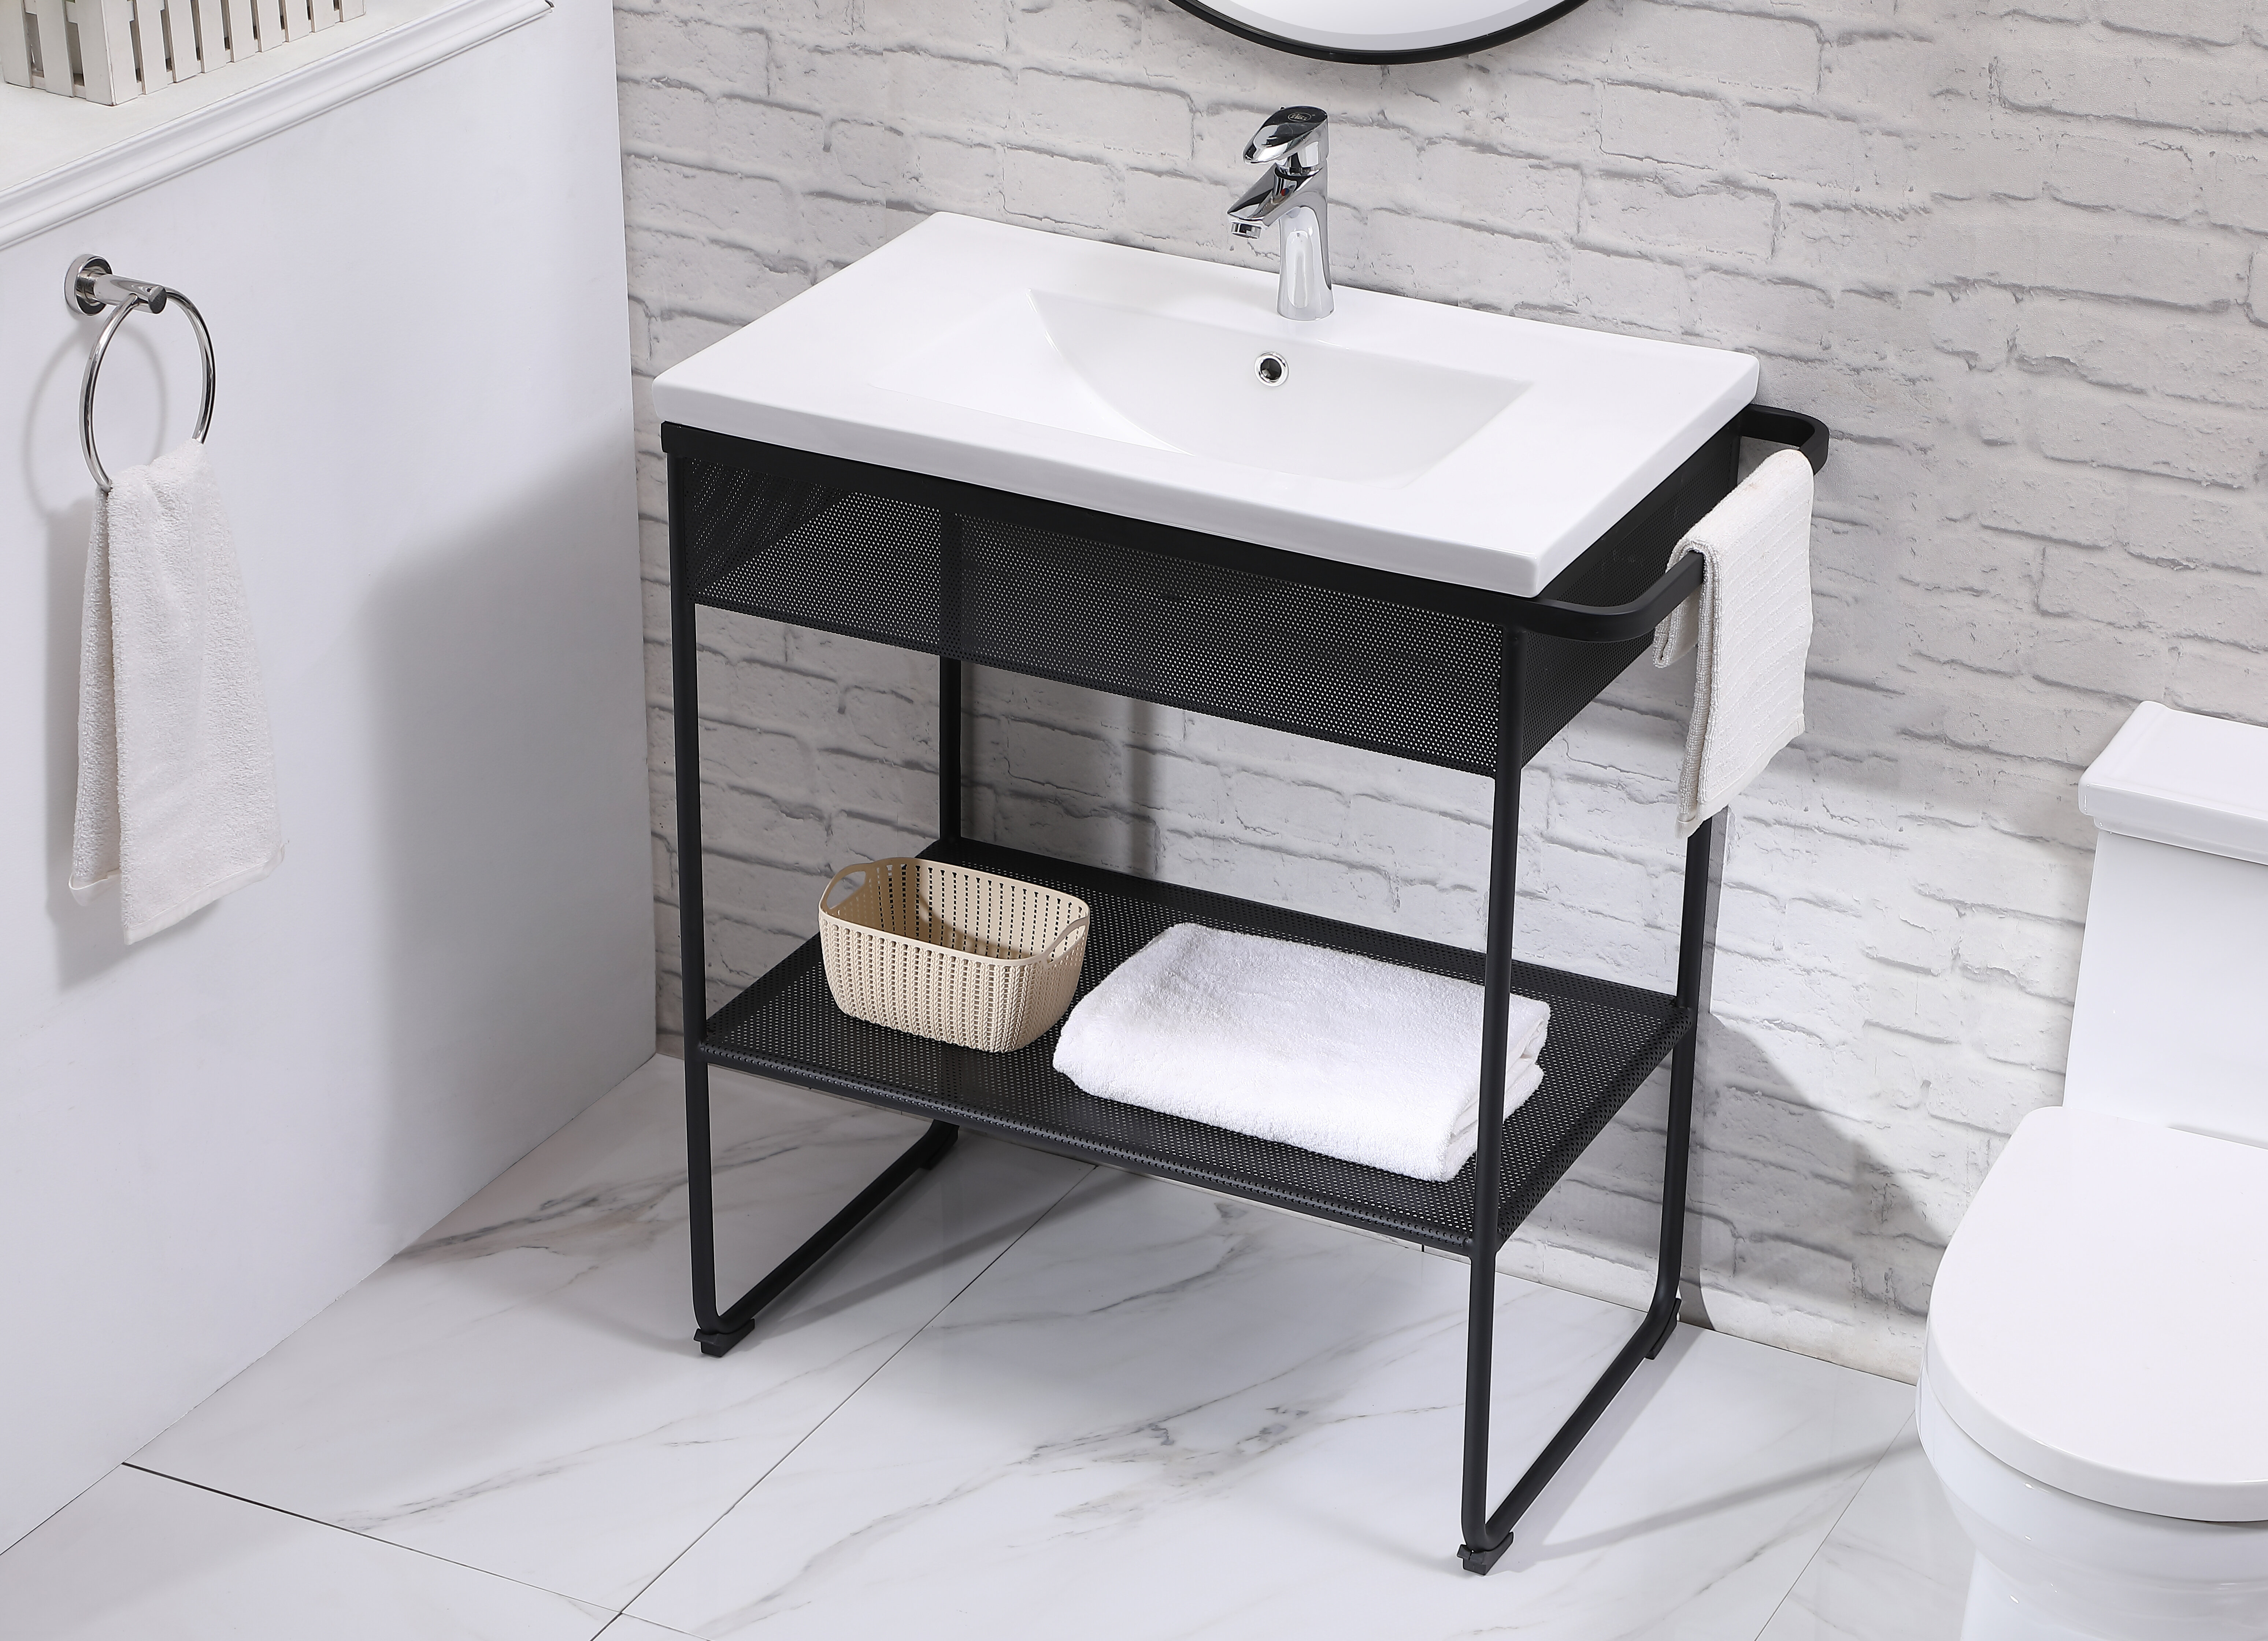 Brayden Studio Iduna 32 Single Bathroom Vanity Set Reviews Wayfair